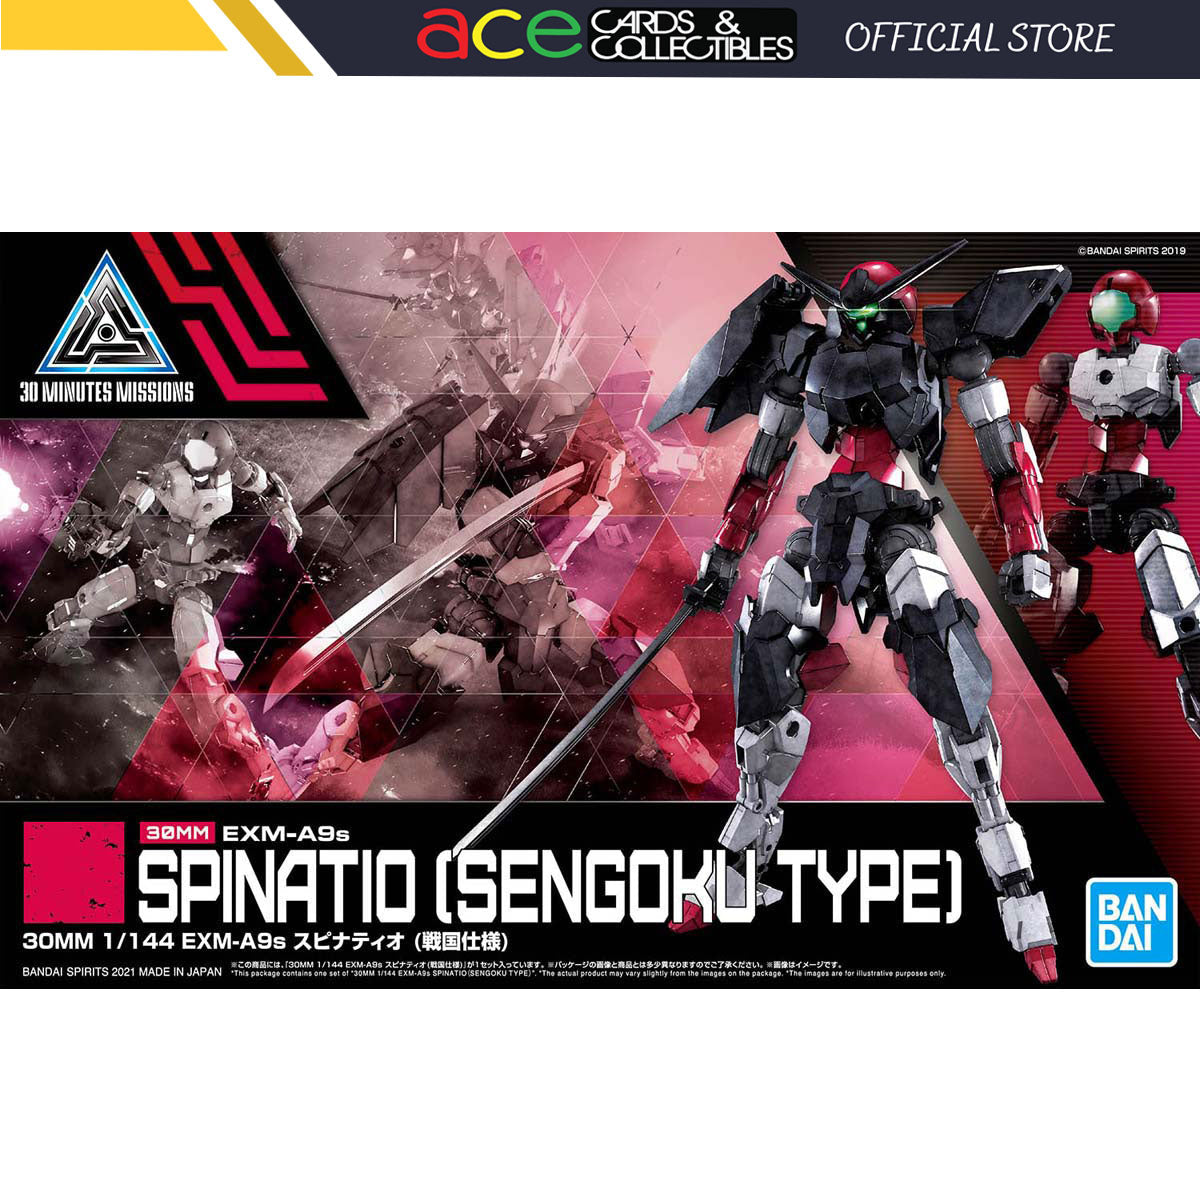 Gunpla 1/144 30MM EXM-A9S Spinatio (Sengoku Type)-Bandai-Ace Cards & Collectibles